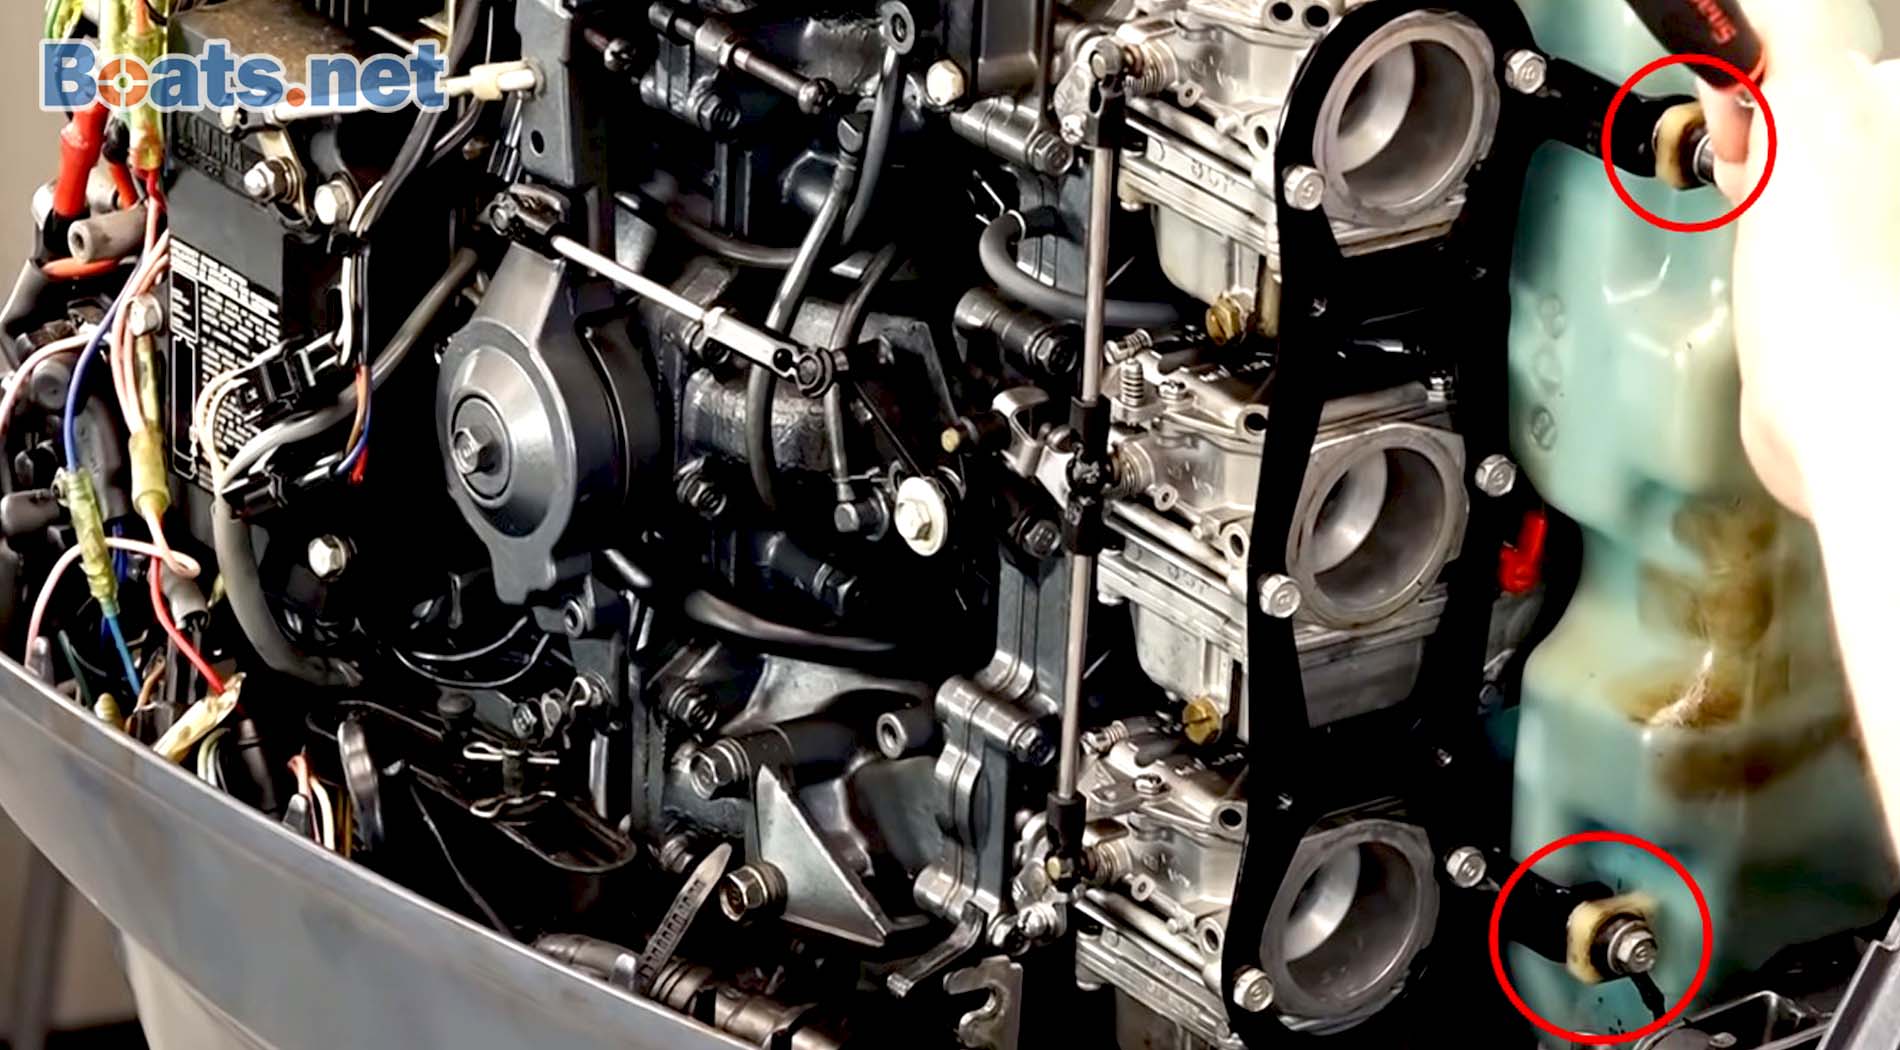 Yamaha B90TLRX carburetor clean and rebuild